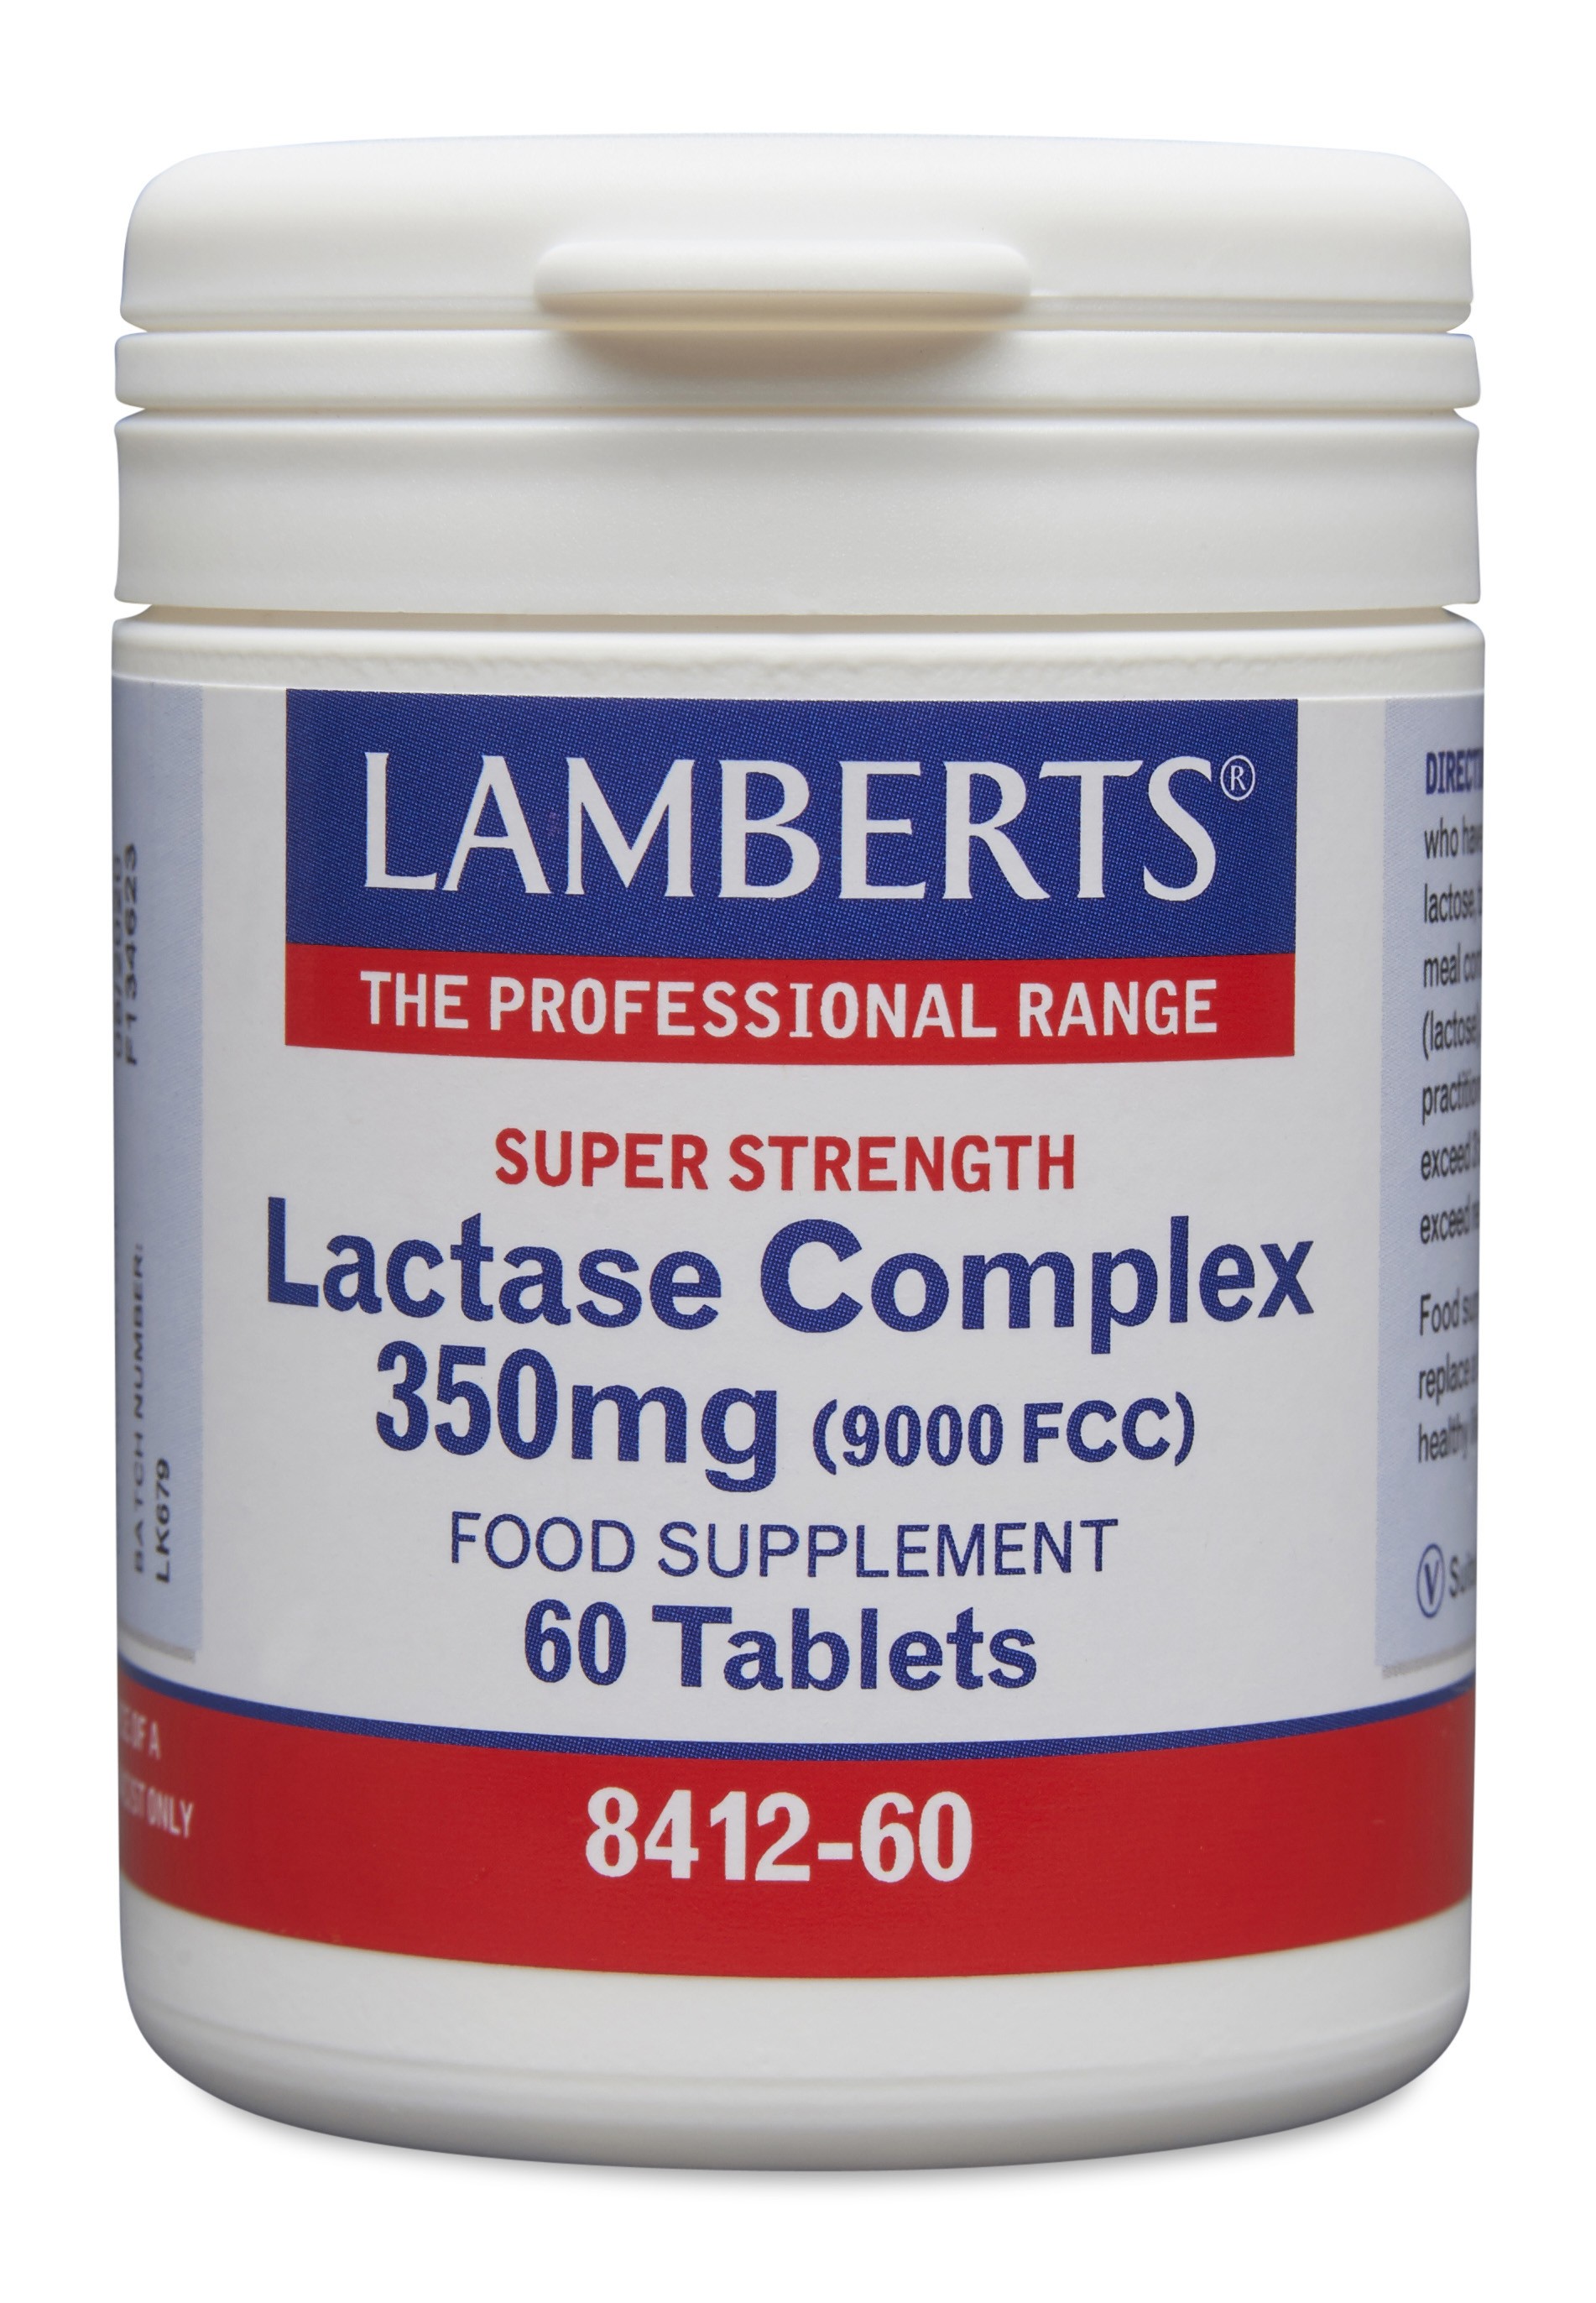 Lamberts Lactase Complex 350mg